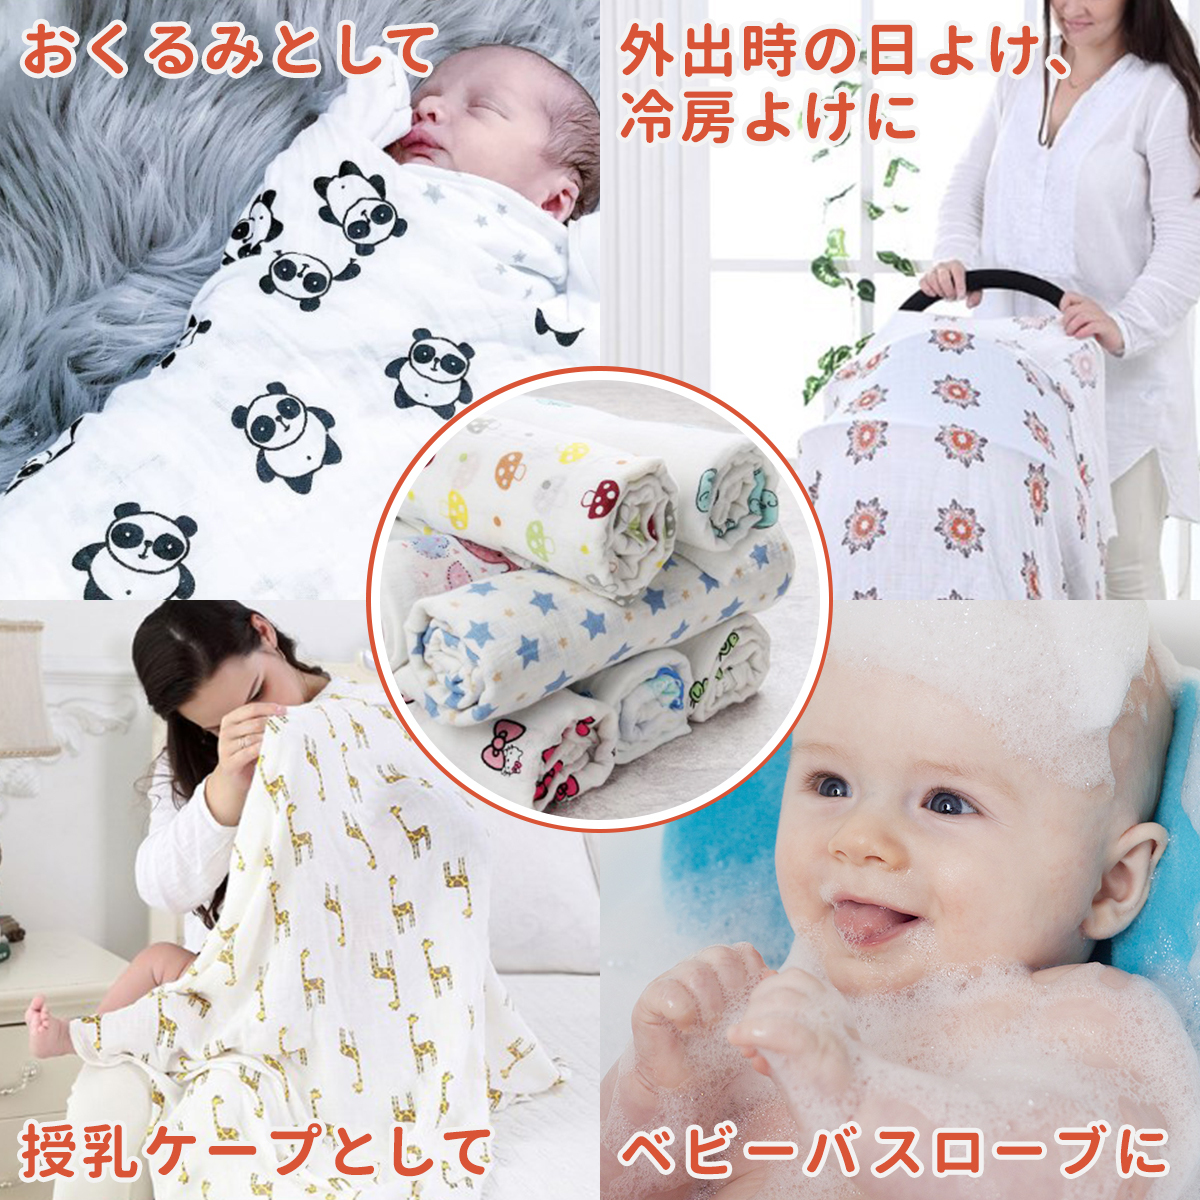  одеяло марля лето младенец новорожденный baby покрывало кормление накидка хлопок 